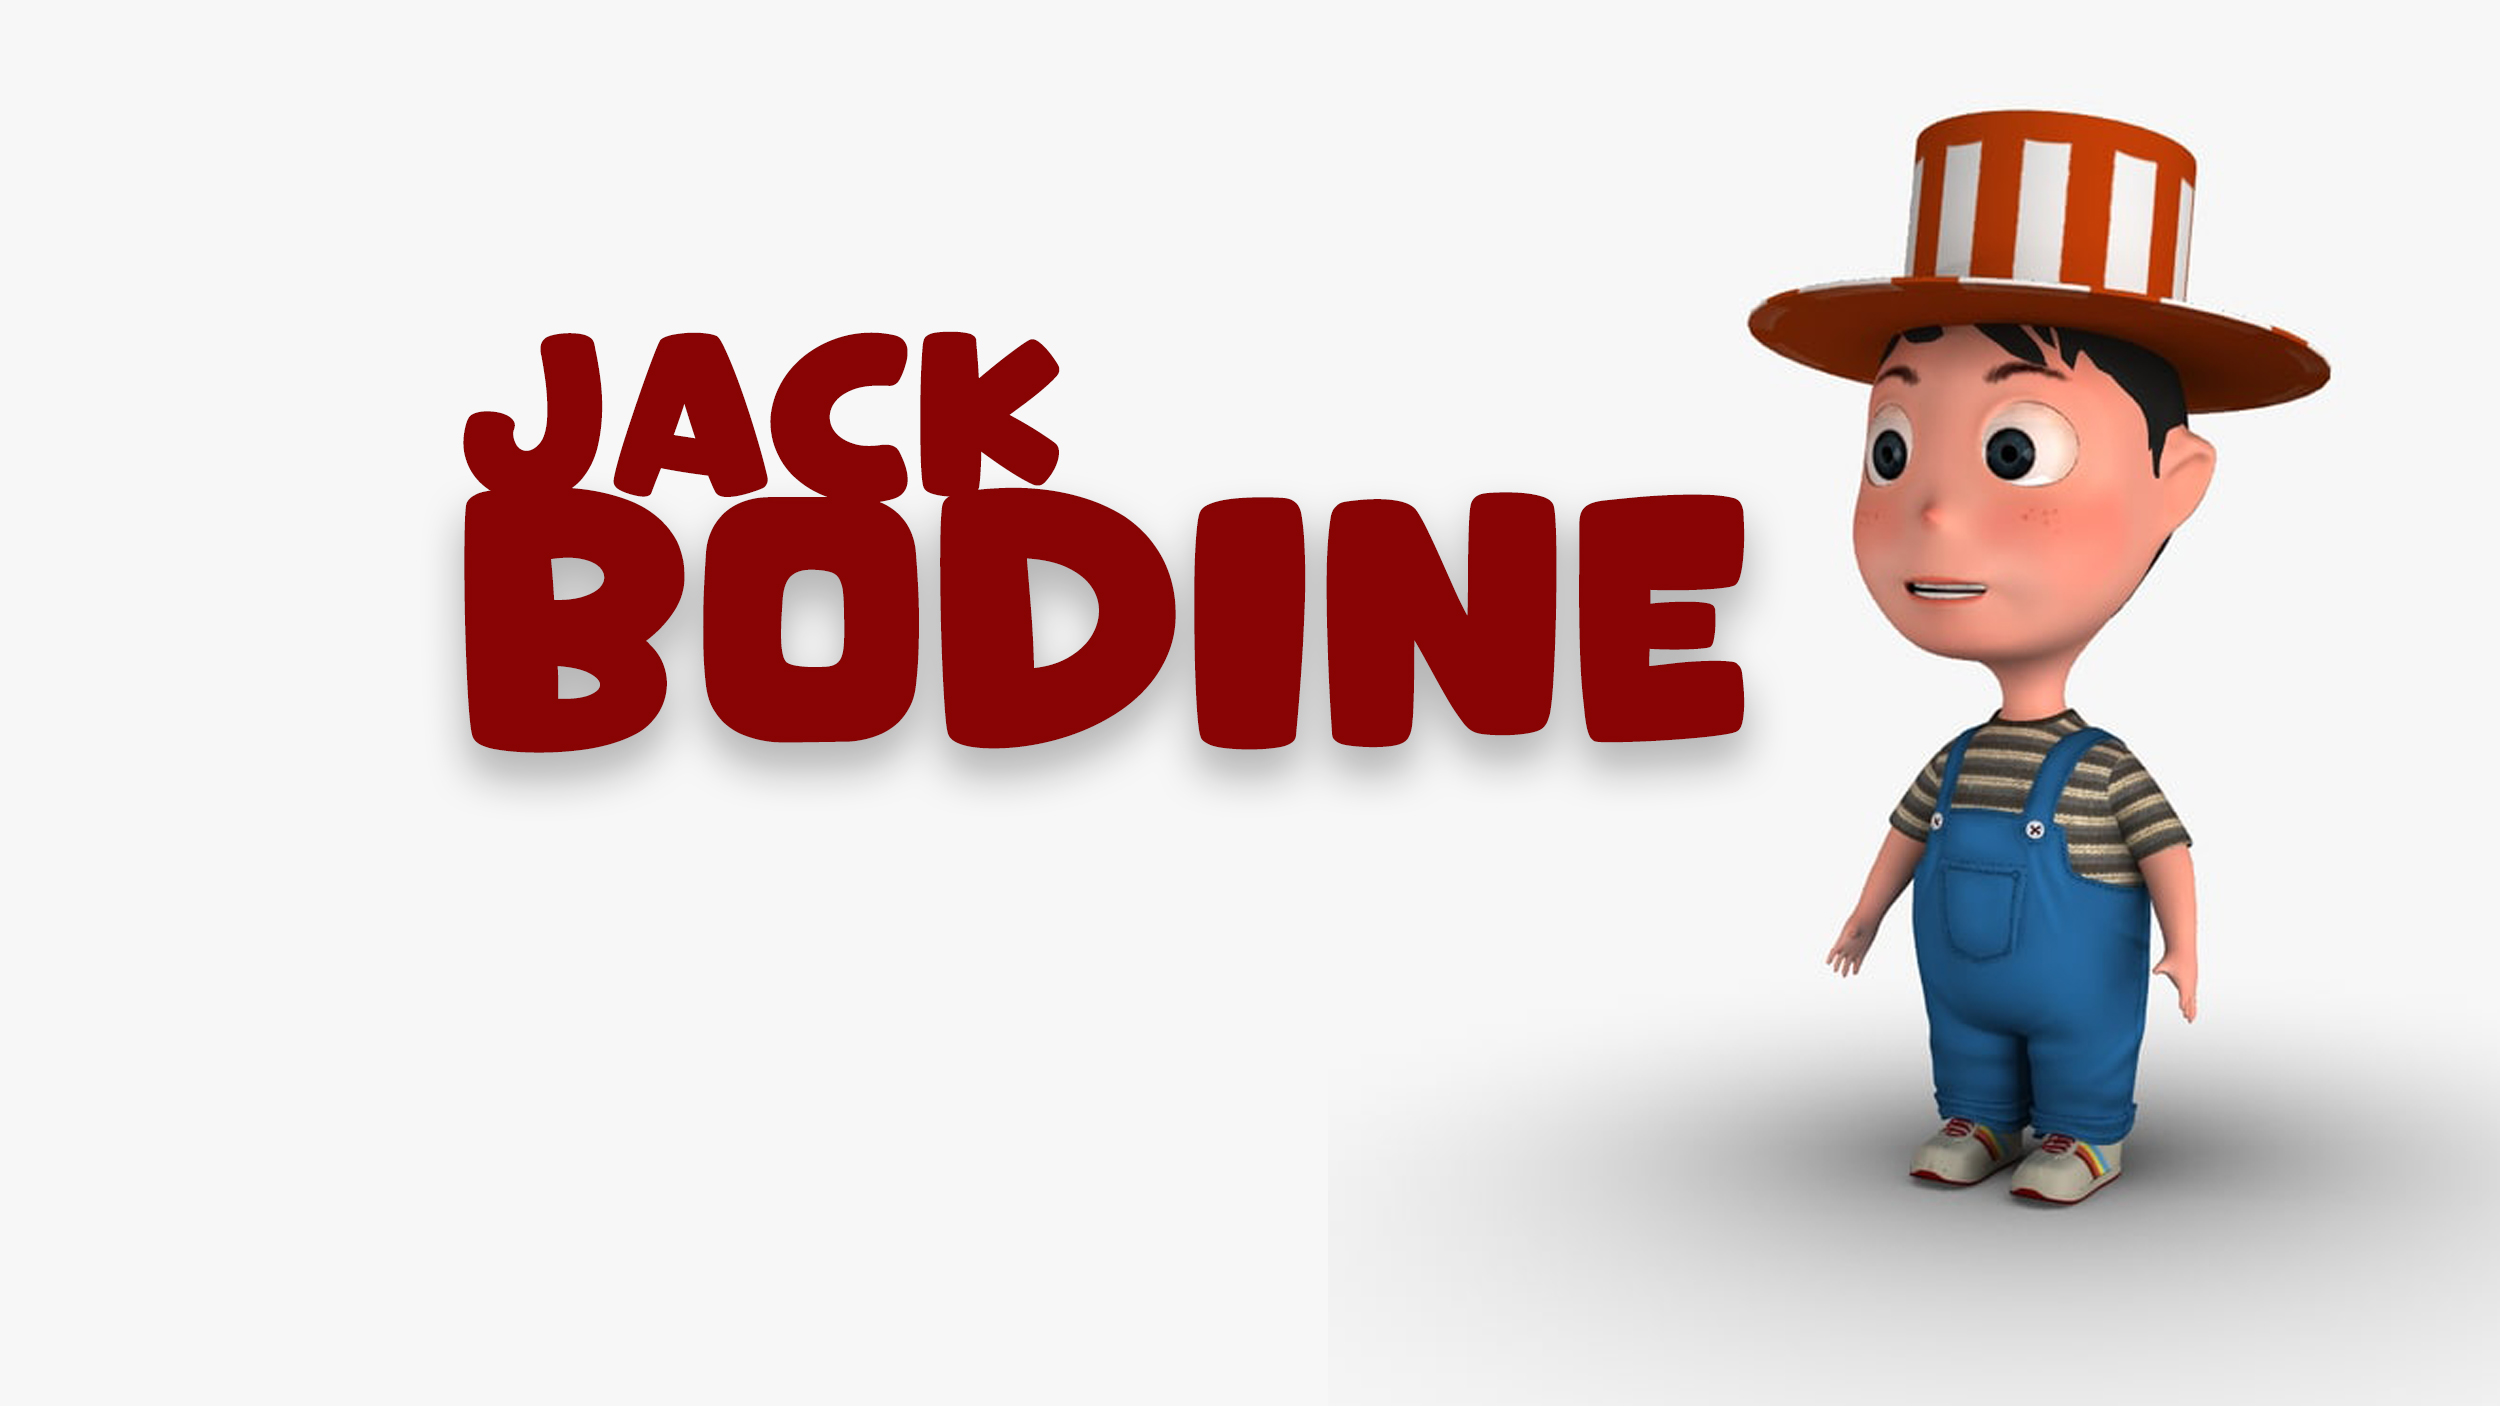 Jack Bodine